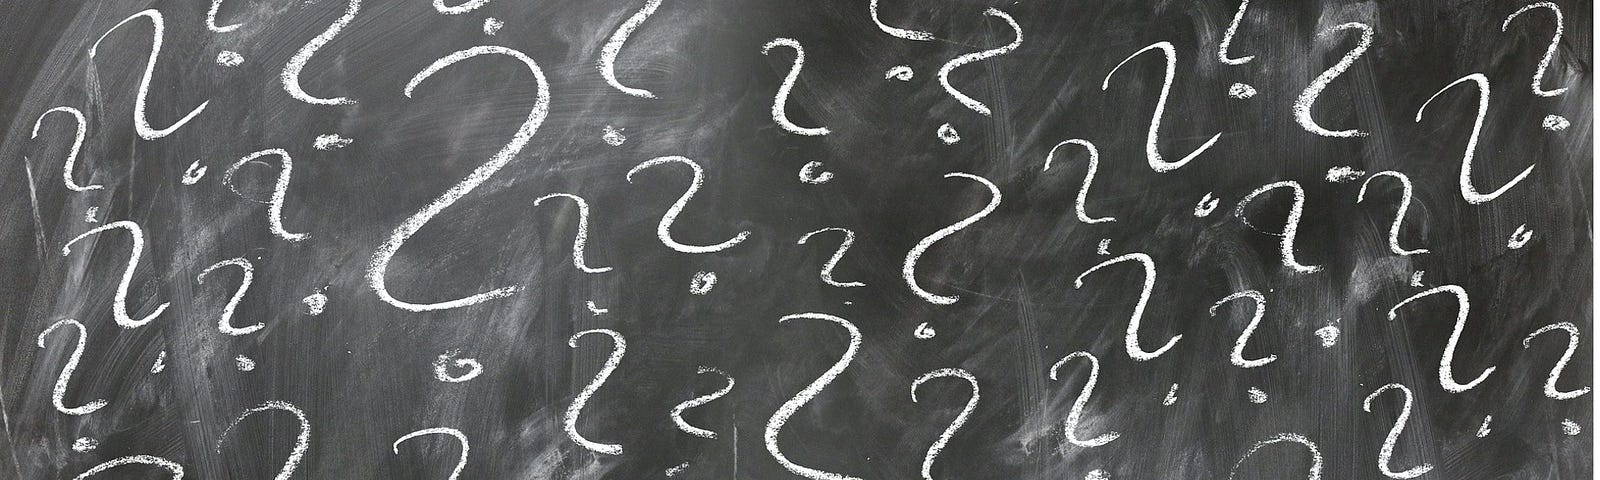 white question marks written on a black chalkboard